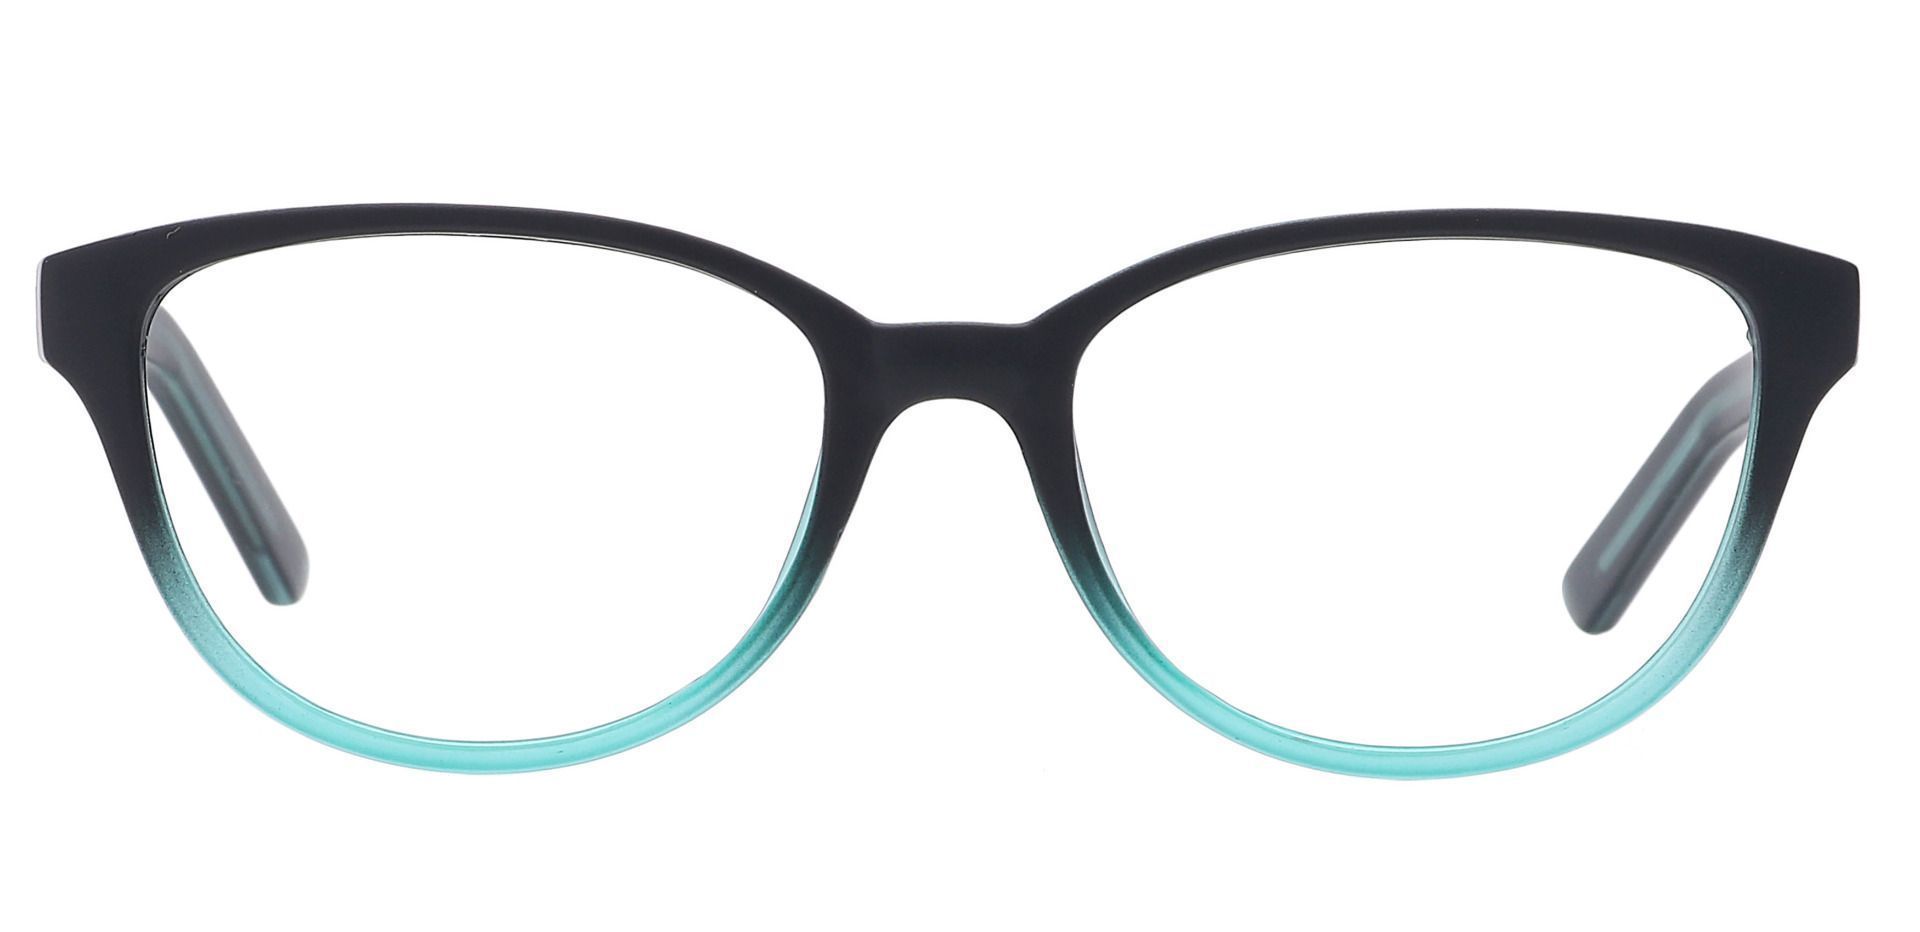 Lulu Oval Eyeglasses Frame - Black/teal Fade